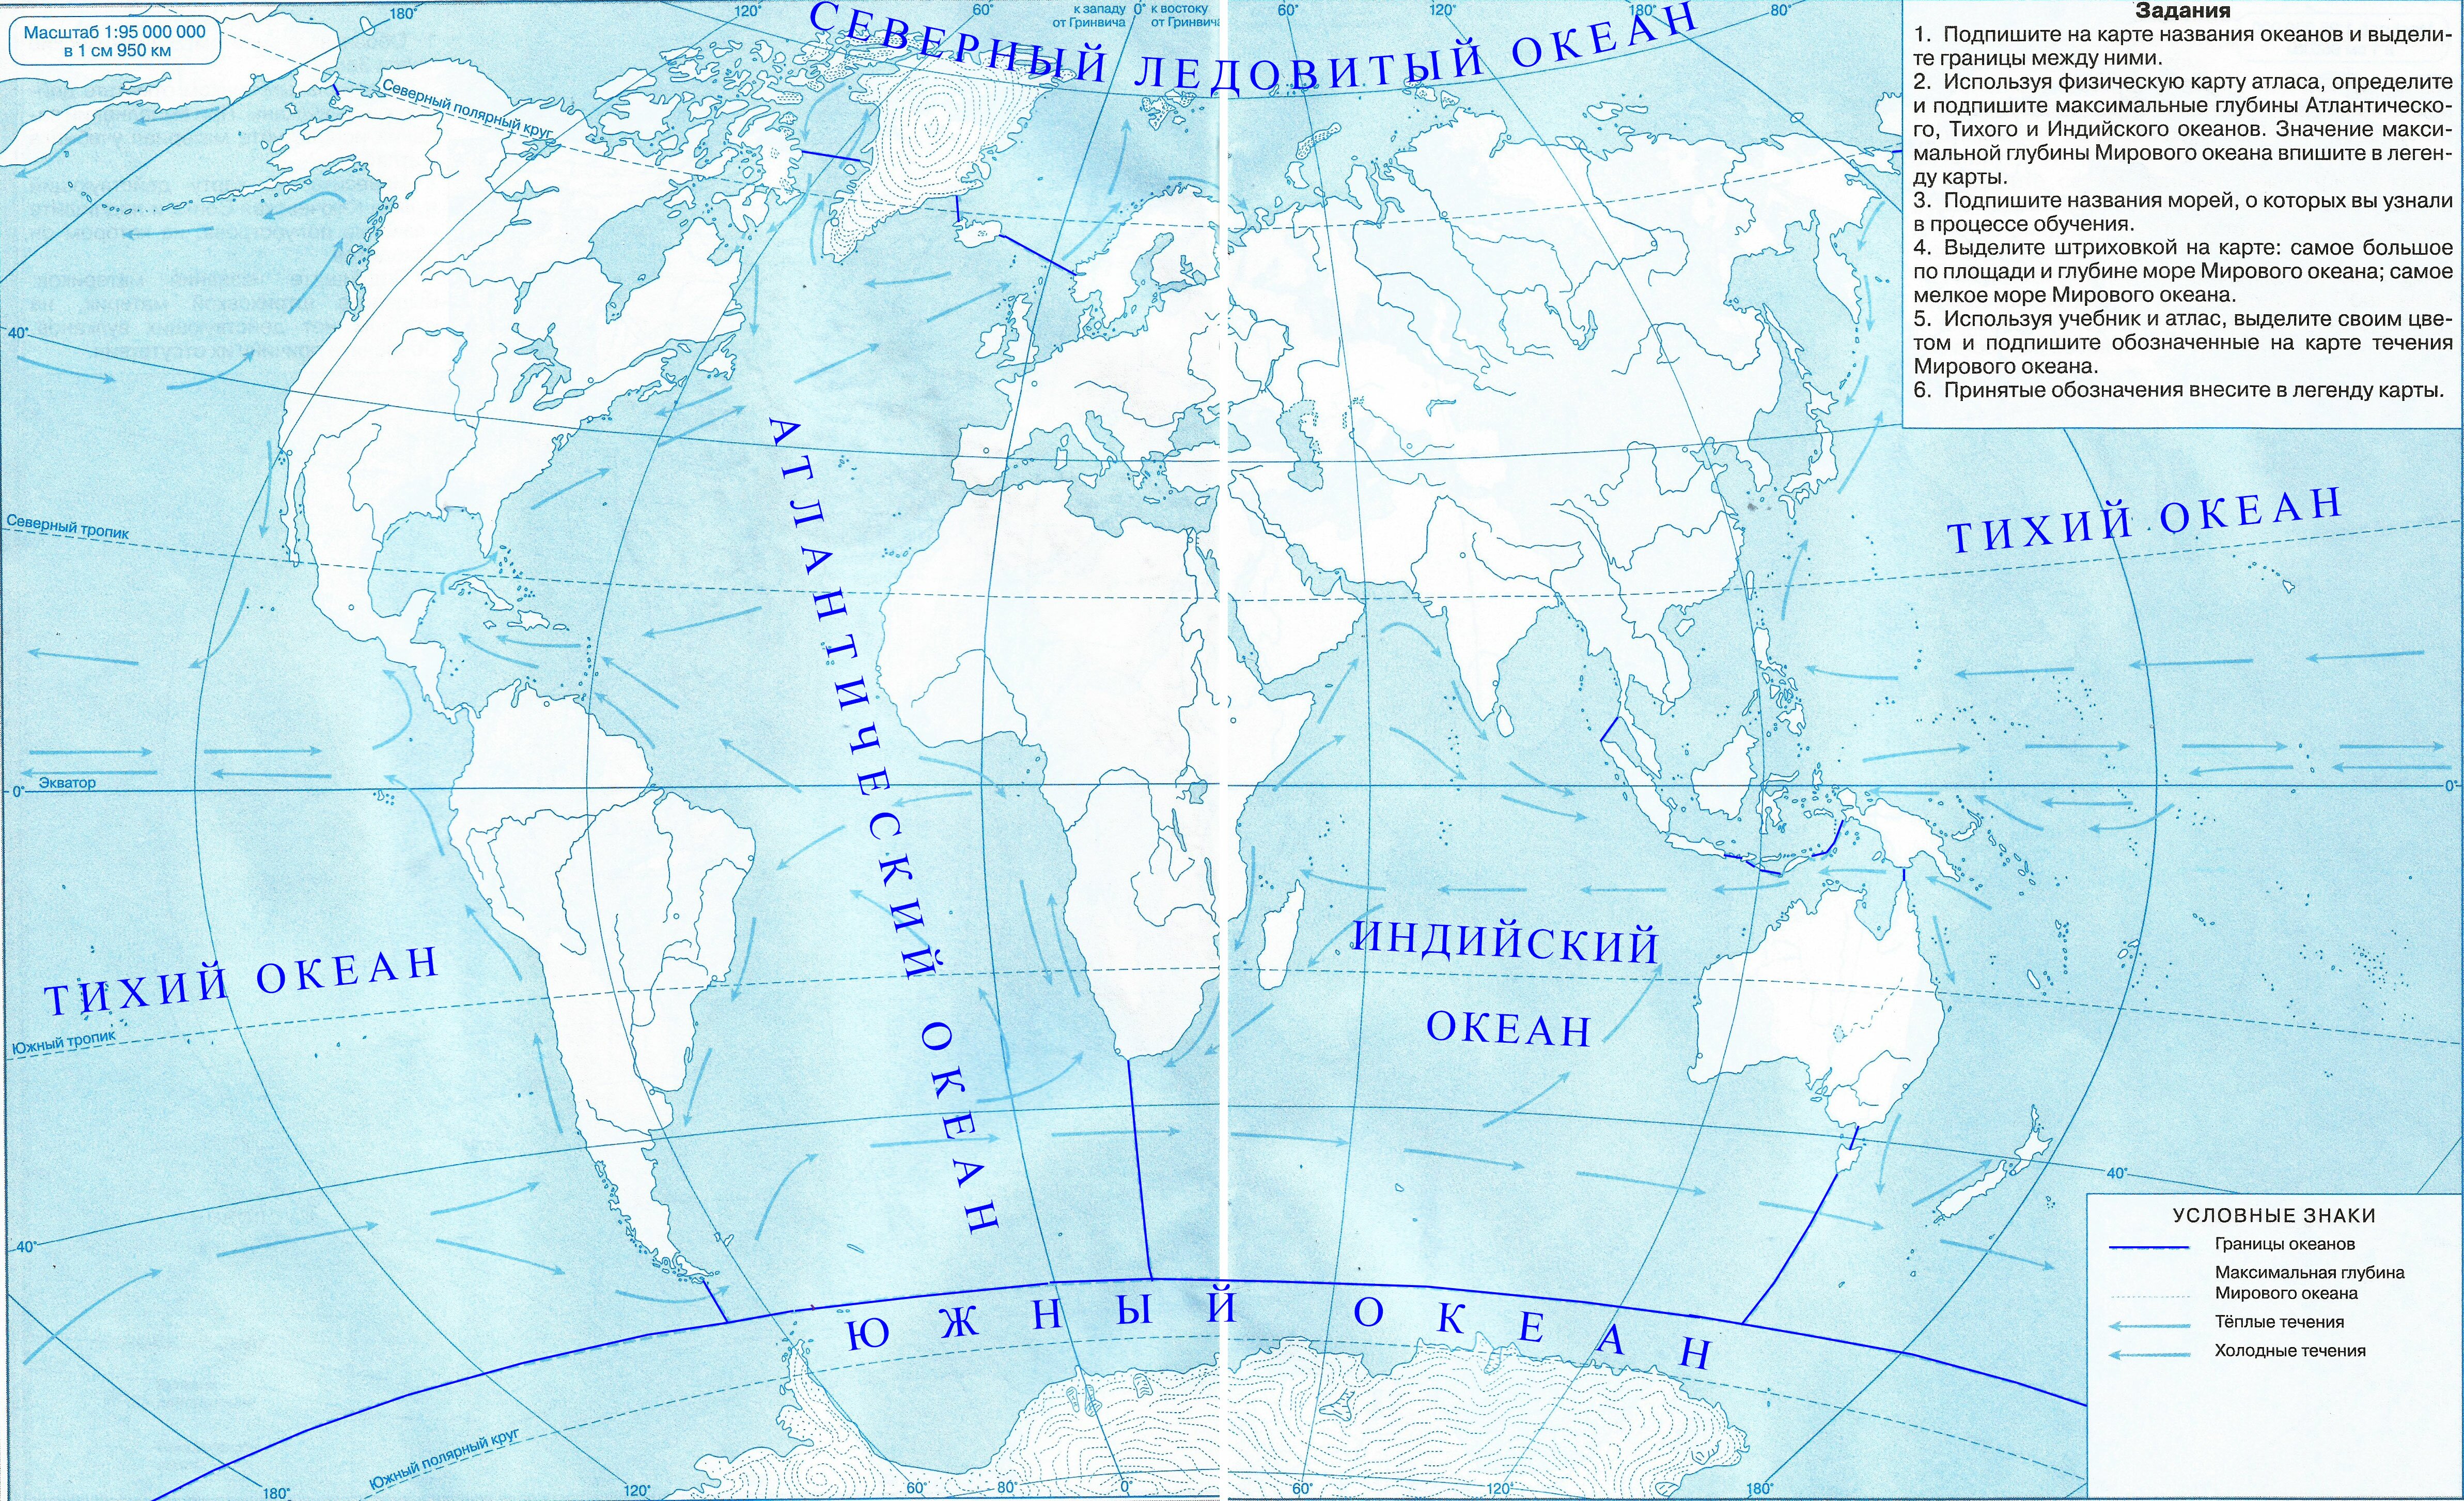 Контурные карты 7 класс стр 4. Контурная карта Тихого океана. Контурная карта по географии 5 класс карта мирового океана. Карта мирового океана 6 класс контурная карта атлас по географии. Максимальная глубина мирового океана на контурной карте.